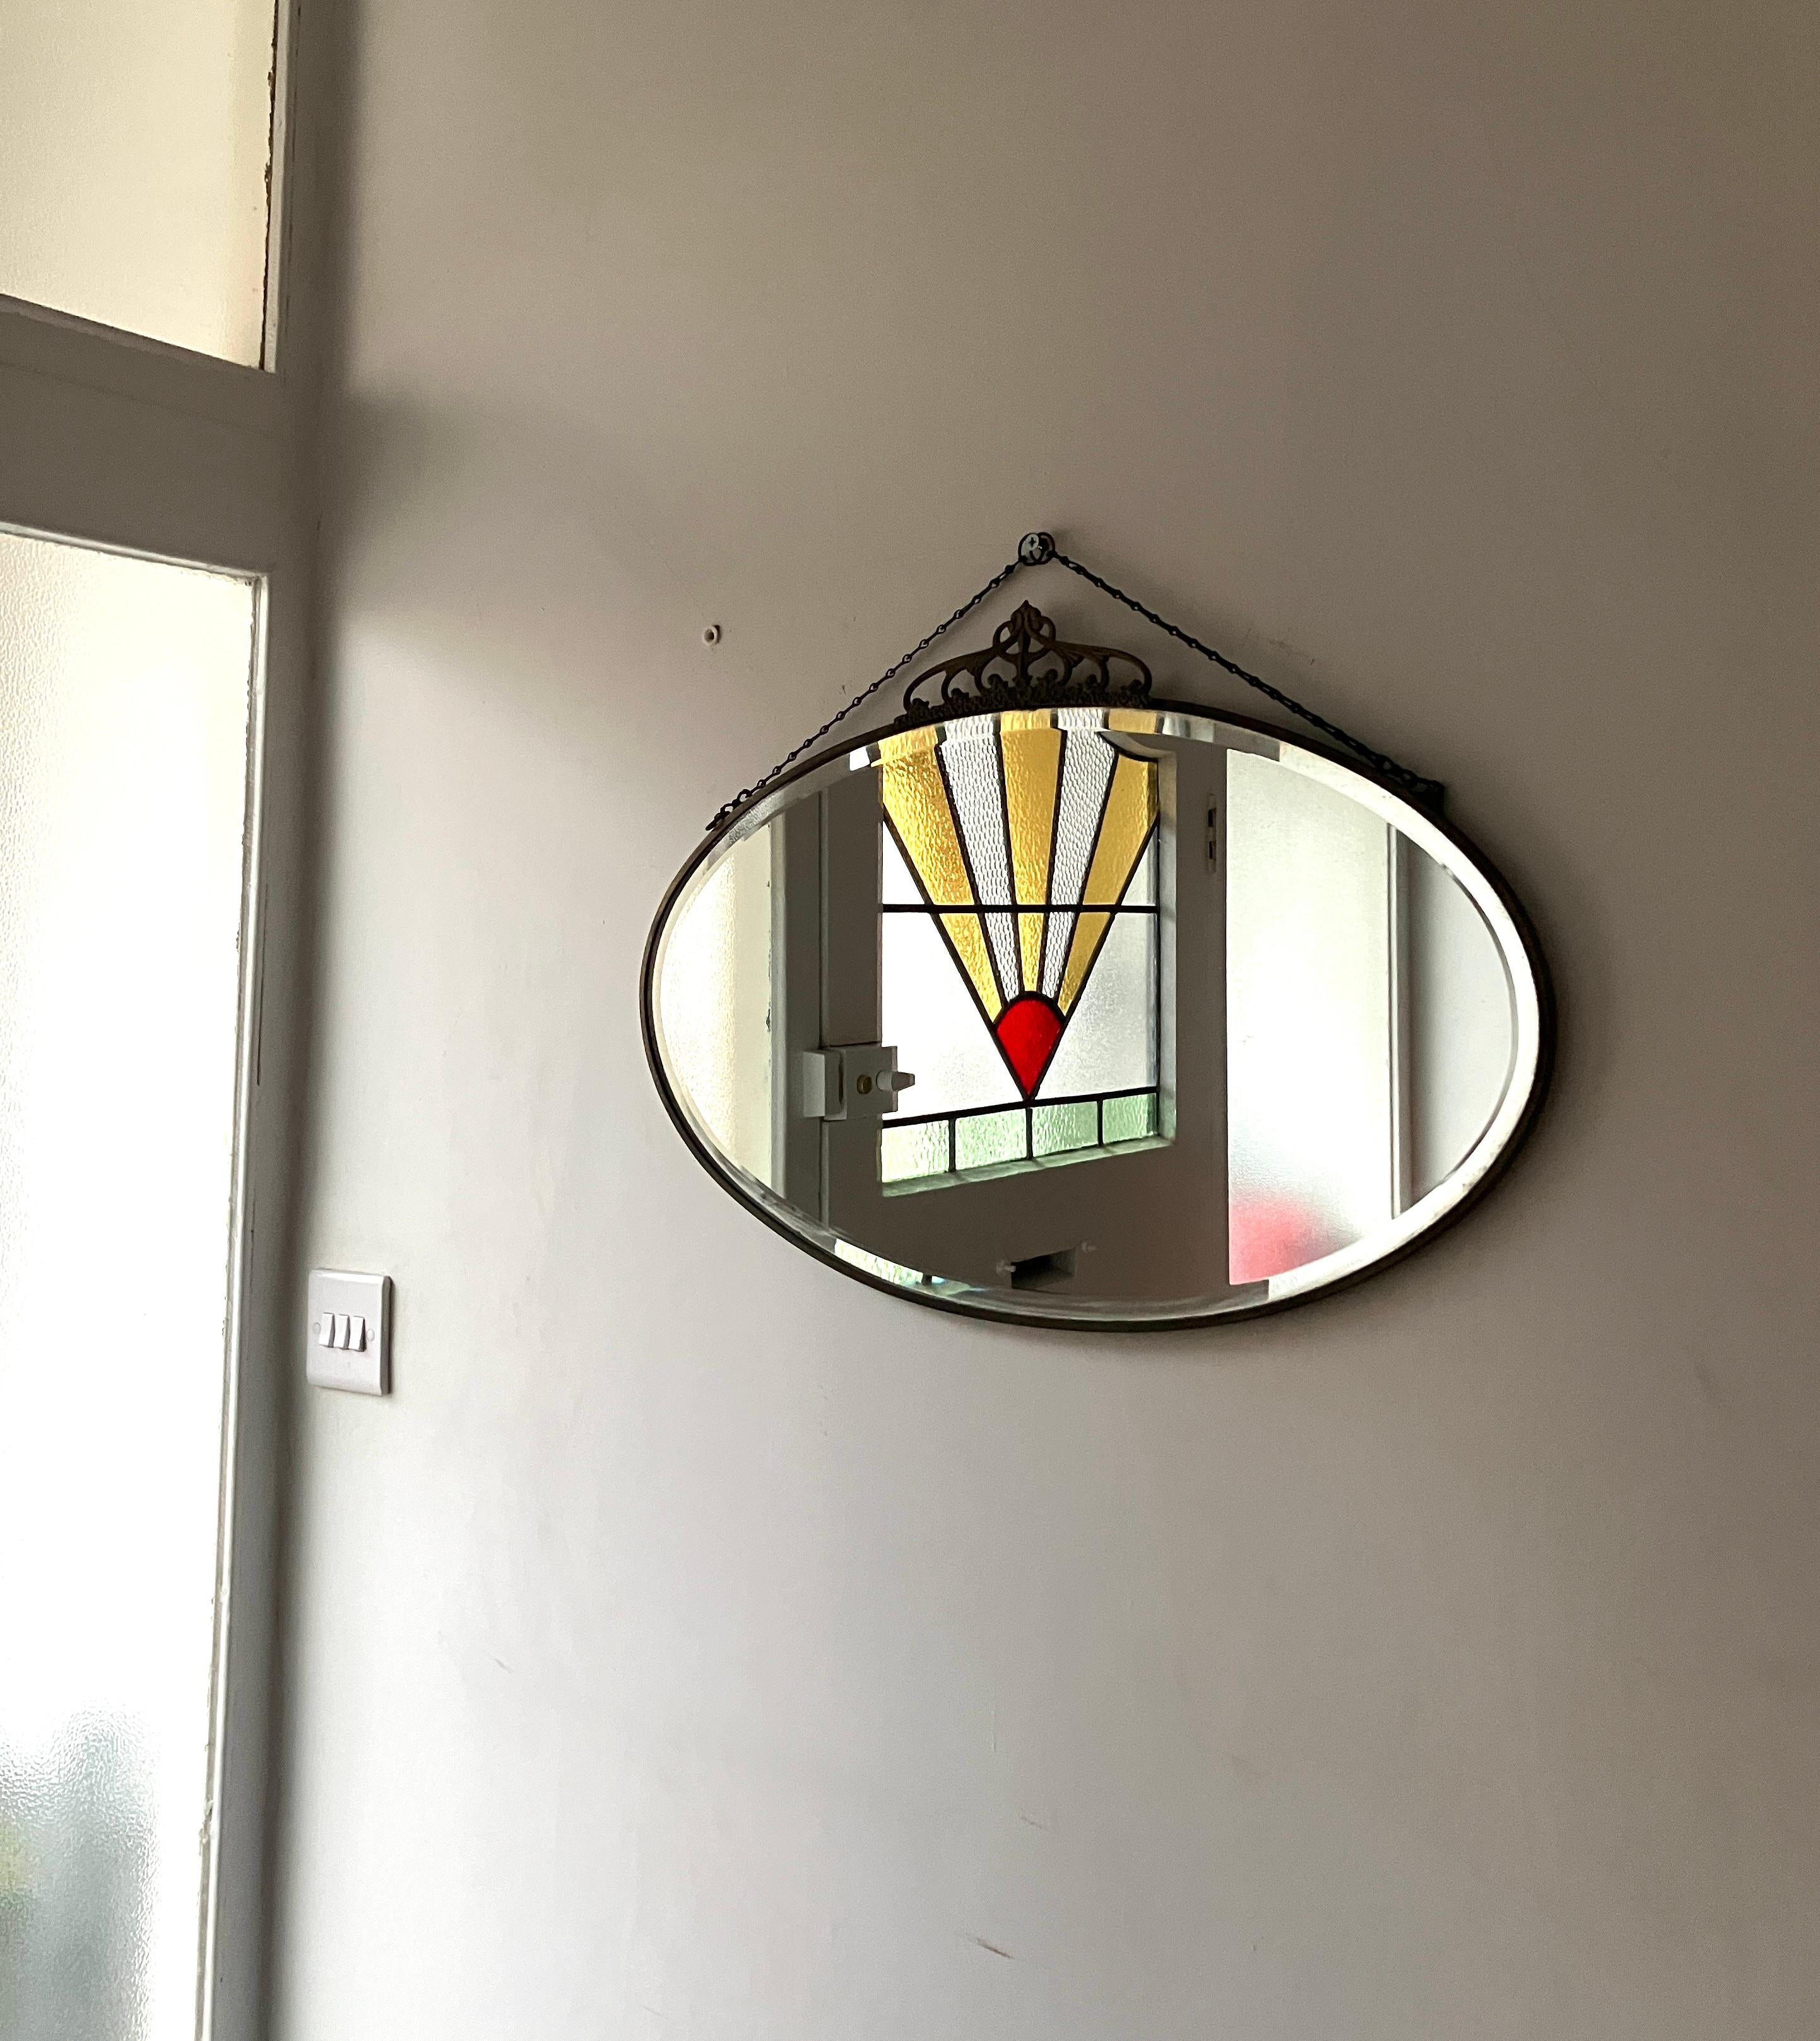 Schöner antiker ovaler wandhängender Spiegel aus England. Dieser ovale Spiegel hat einen Messingrahmen und eine dekorative Krone auf der Oberseite. Auf der Rückseite befinden sich Herstellermarken. Kette zum Aufhängen.

Größe: 61 cm breit, 35 cm